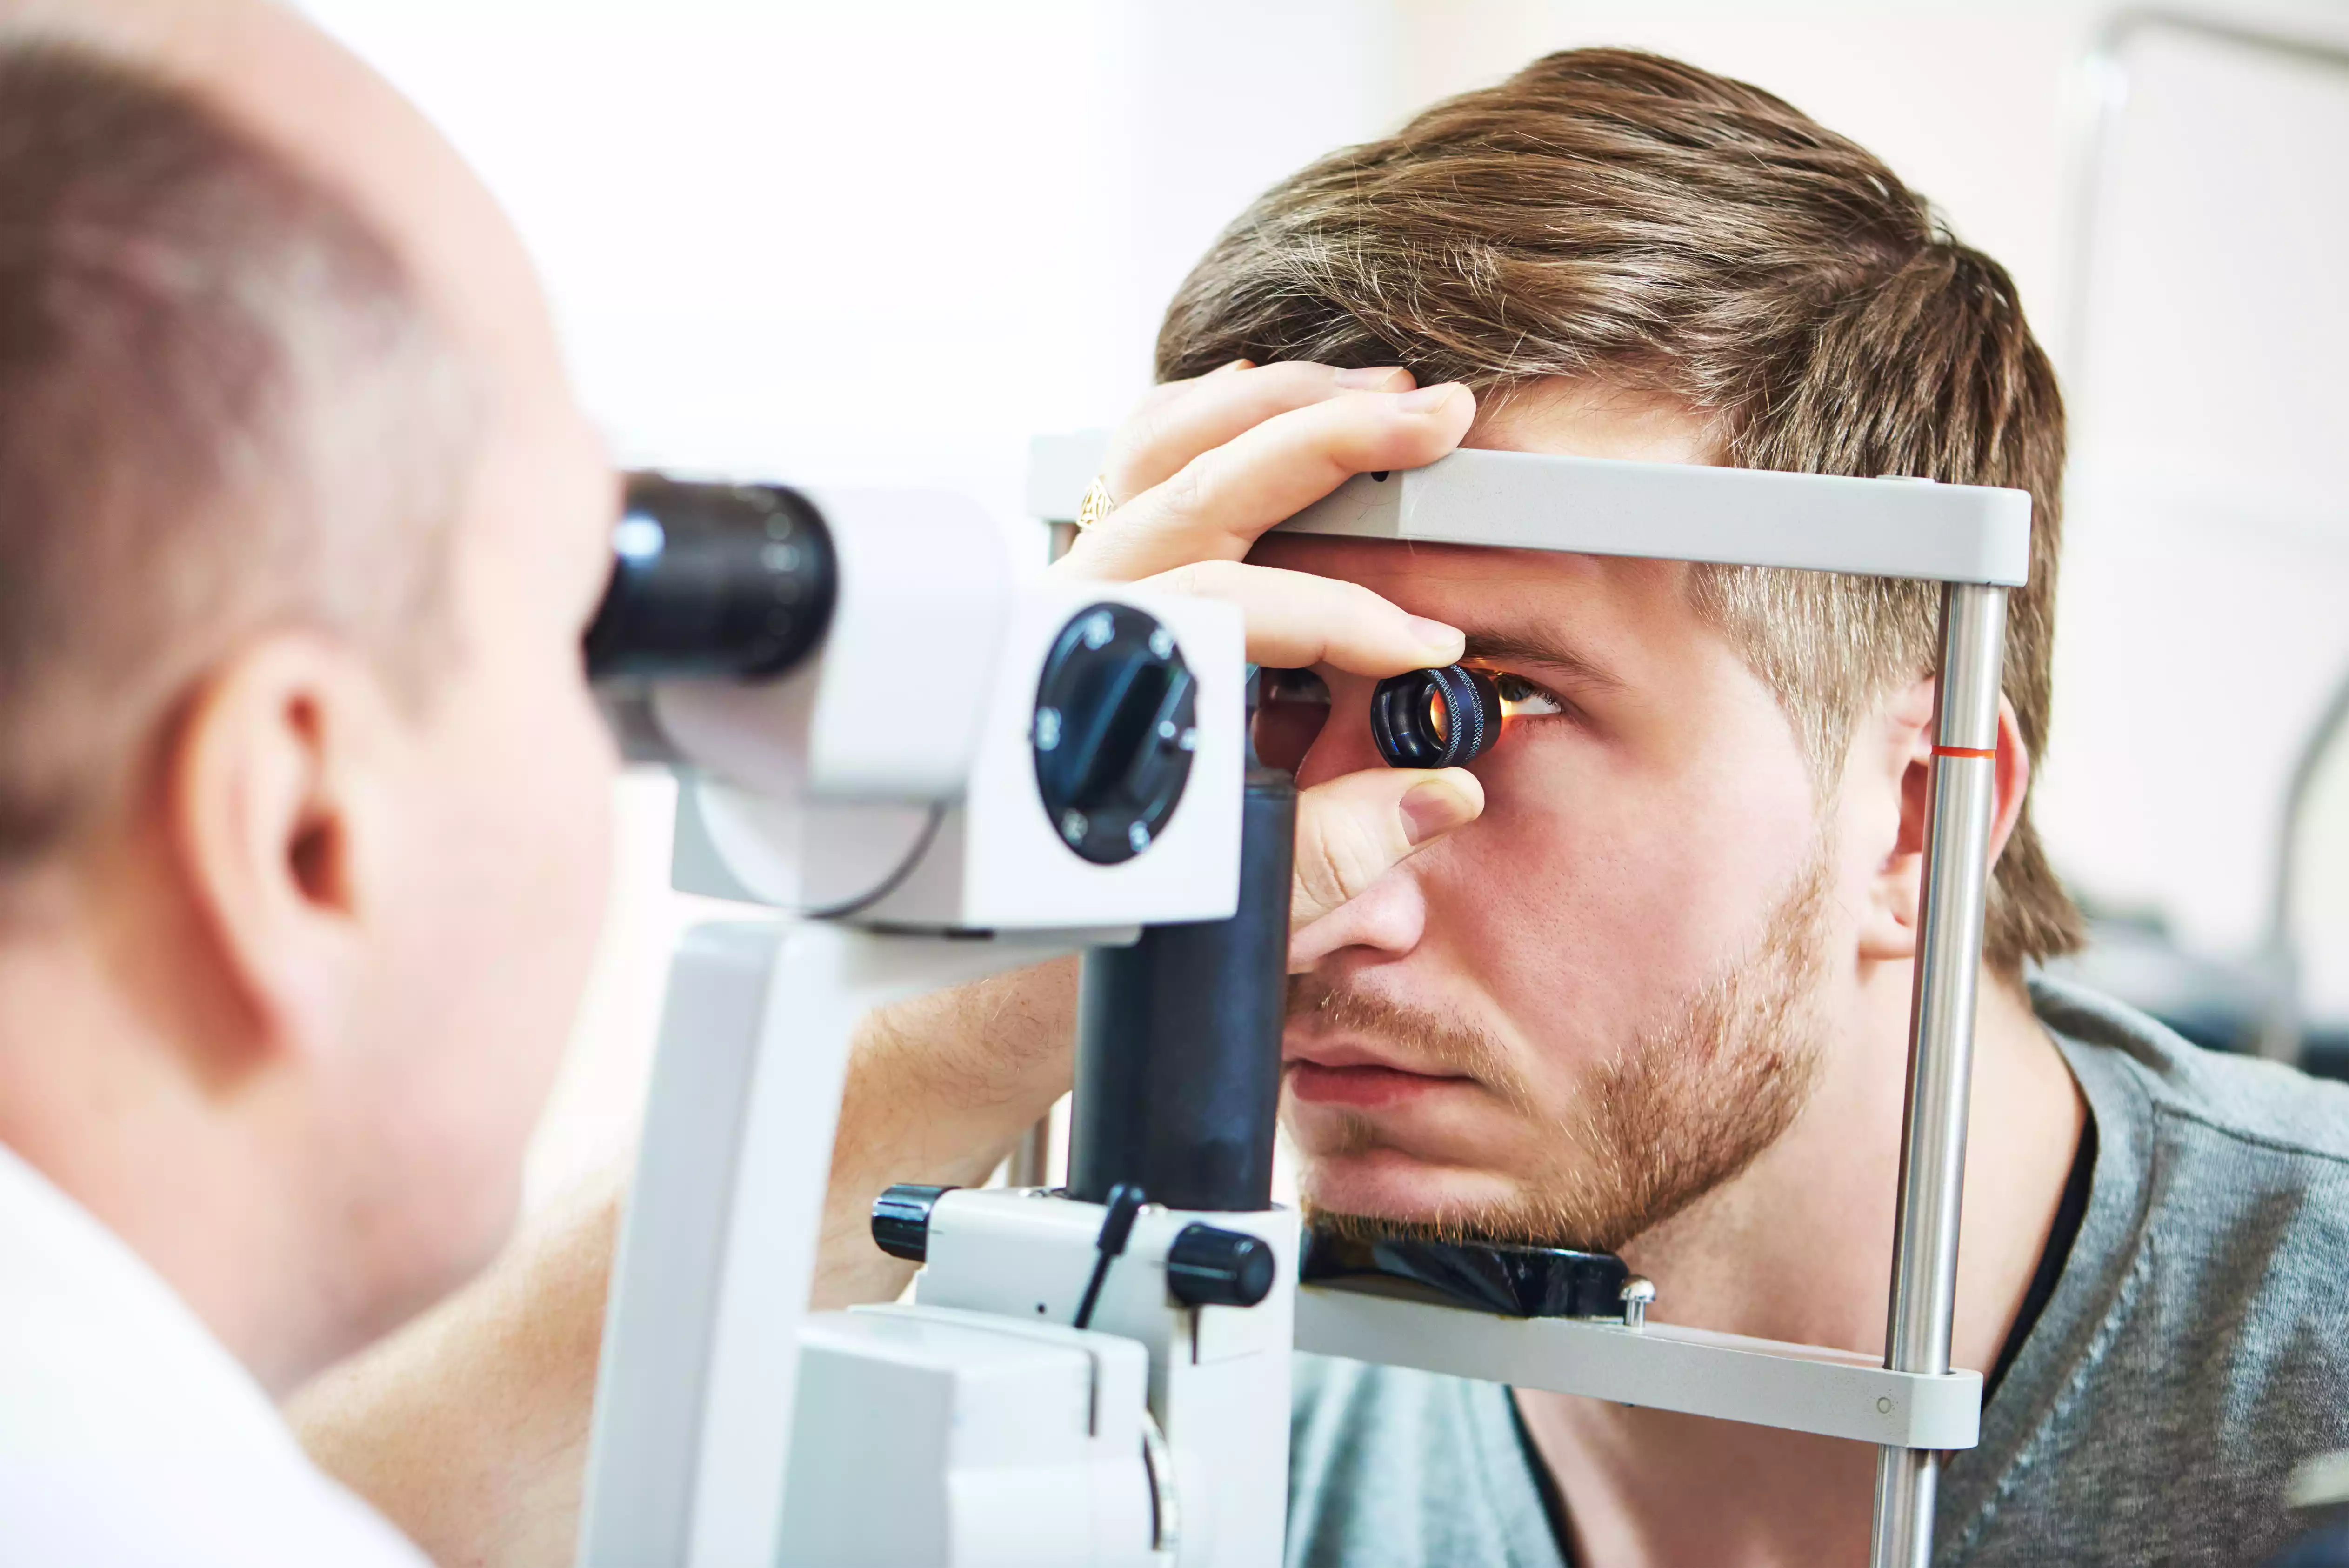 Gözlerimiz Neden Bozulur? Göz Hastalıkları Nelerdir? Göz Sağlığımızın Bozulmaması İçin Ne Yapmalıyız? Gözle İlgili Doğru Bilinen Yanlışlar